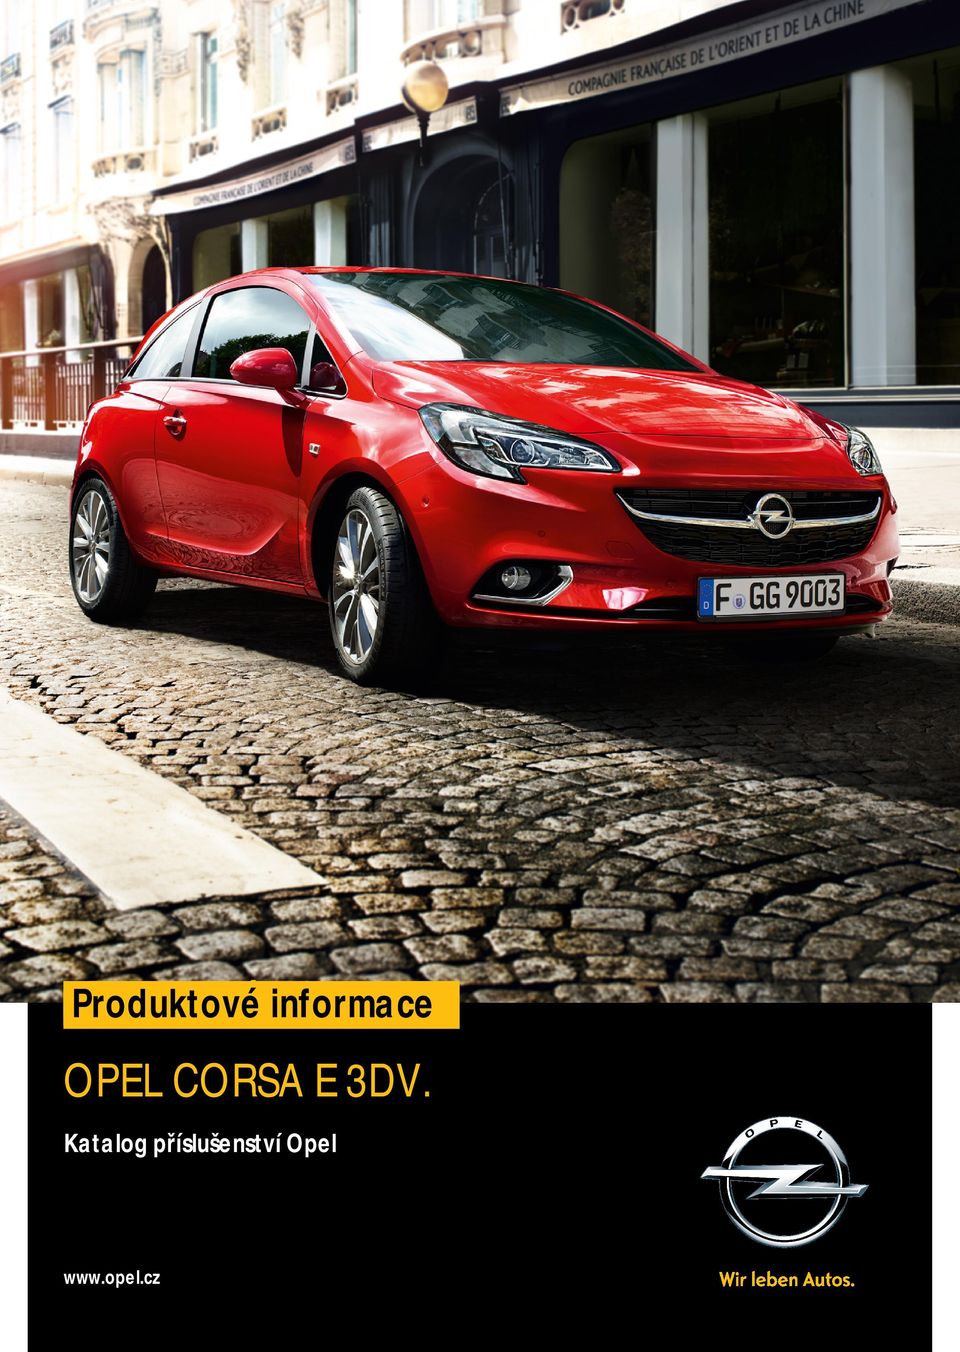 Produktové informace OPEL CORSA E 3DV. Katalog příslušenství Opel. - PDF  Stažení zdarma